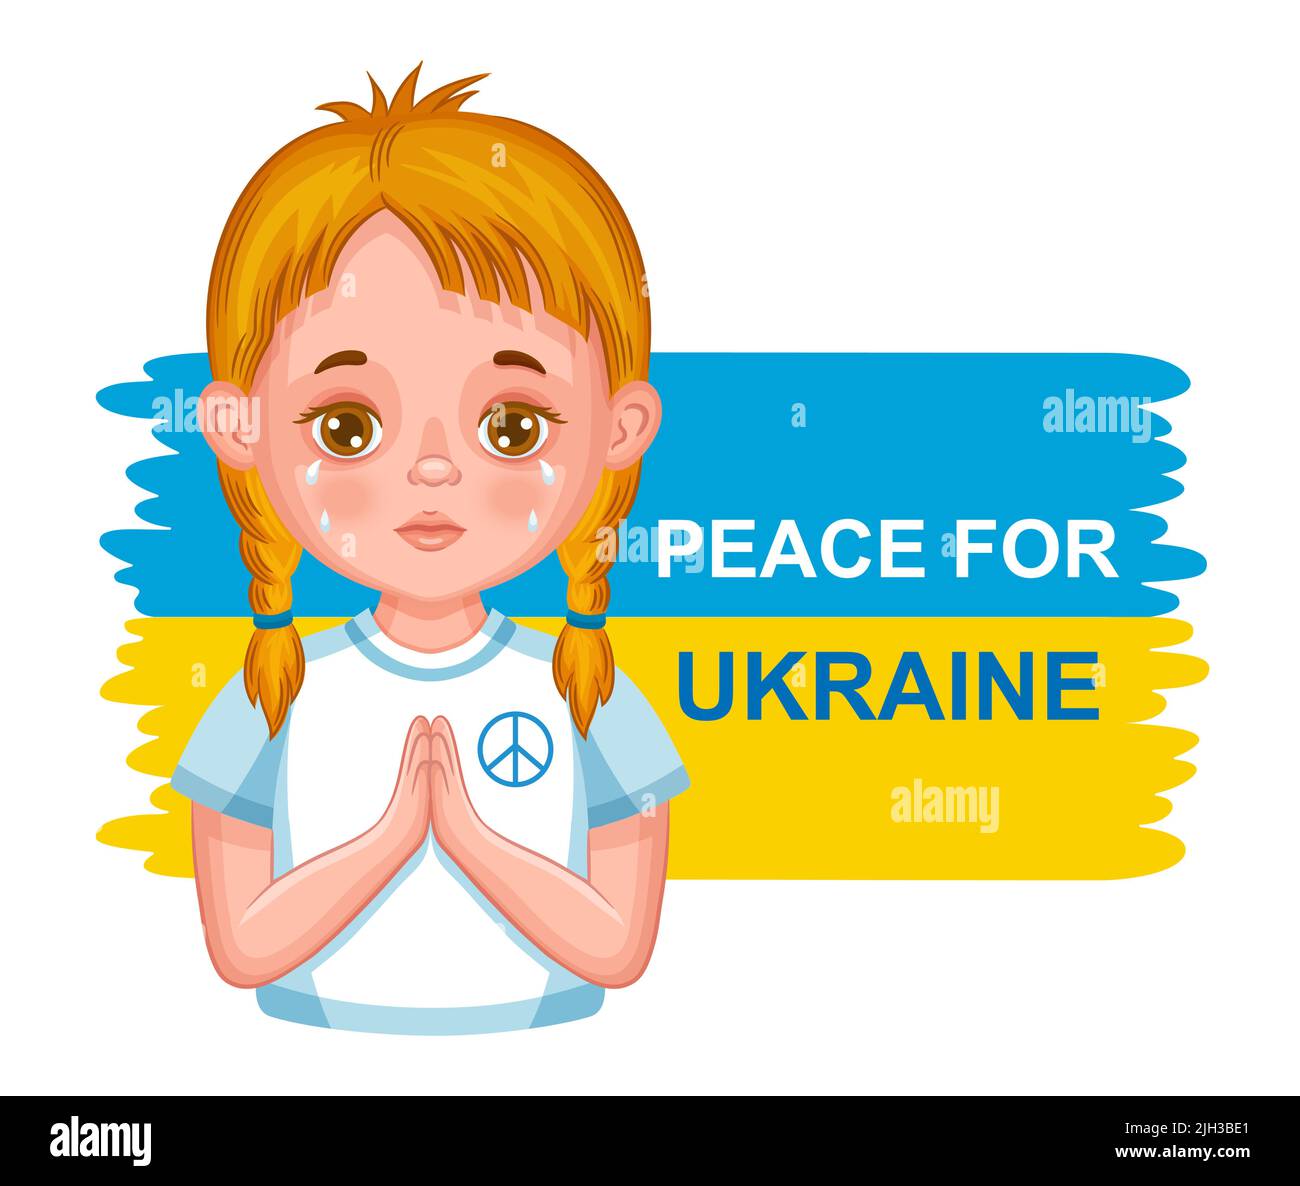 Betet für Frieden, beendet den Krieg, rettet die Ukraine. Ukrainisches Mädchen Kind weinen. Helfen Sie beim Schutz vor Russland Terror militärische Aggression. Gebet, Nationalflaggenvektor Stock Vektor